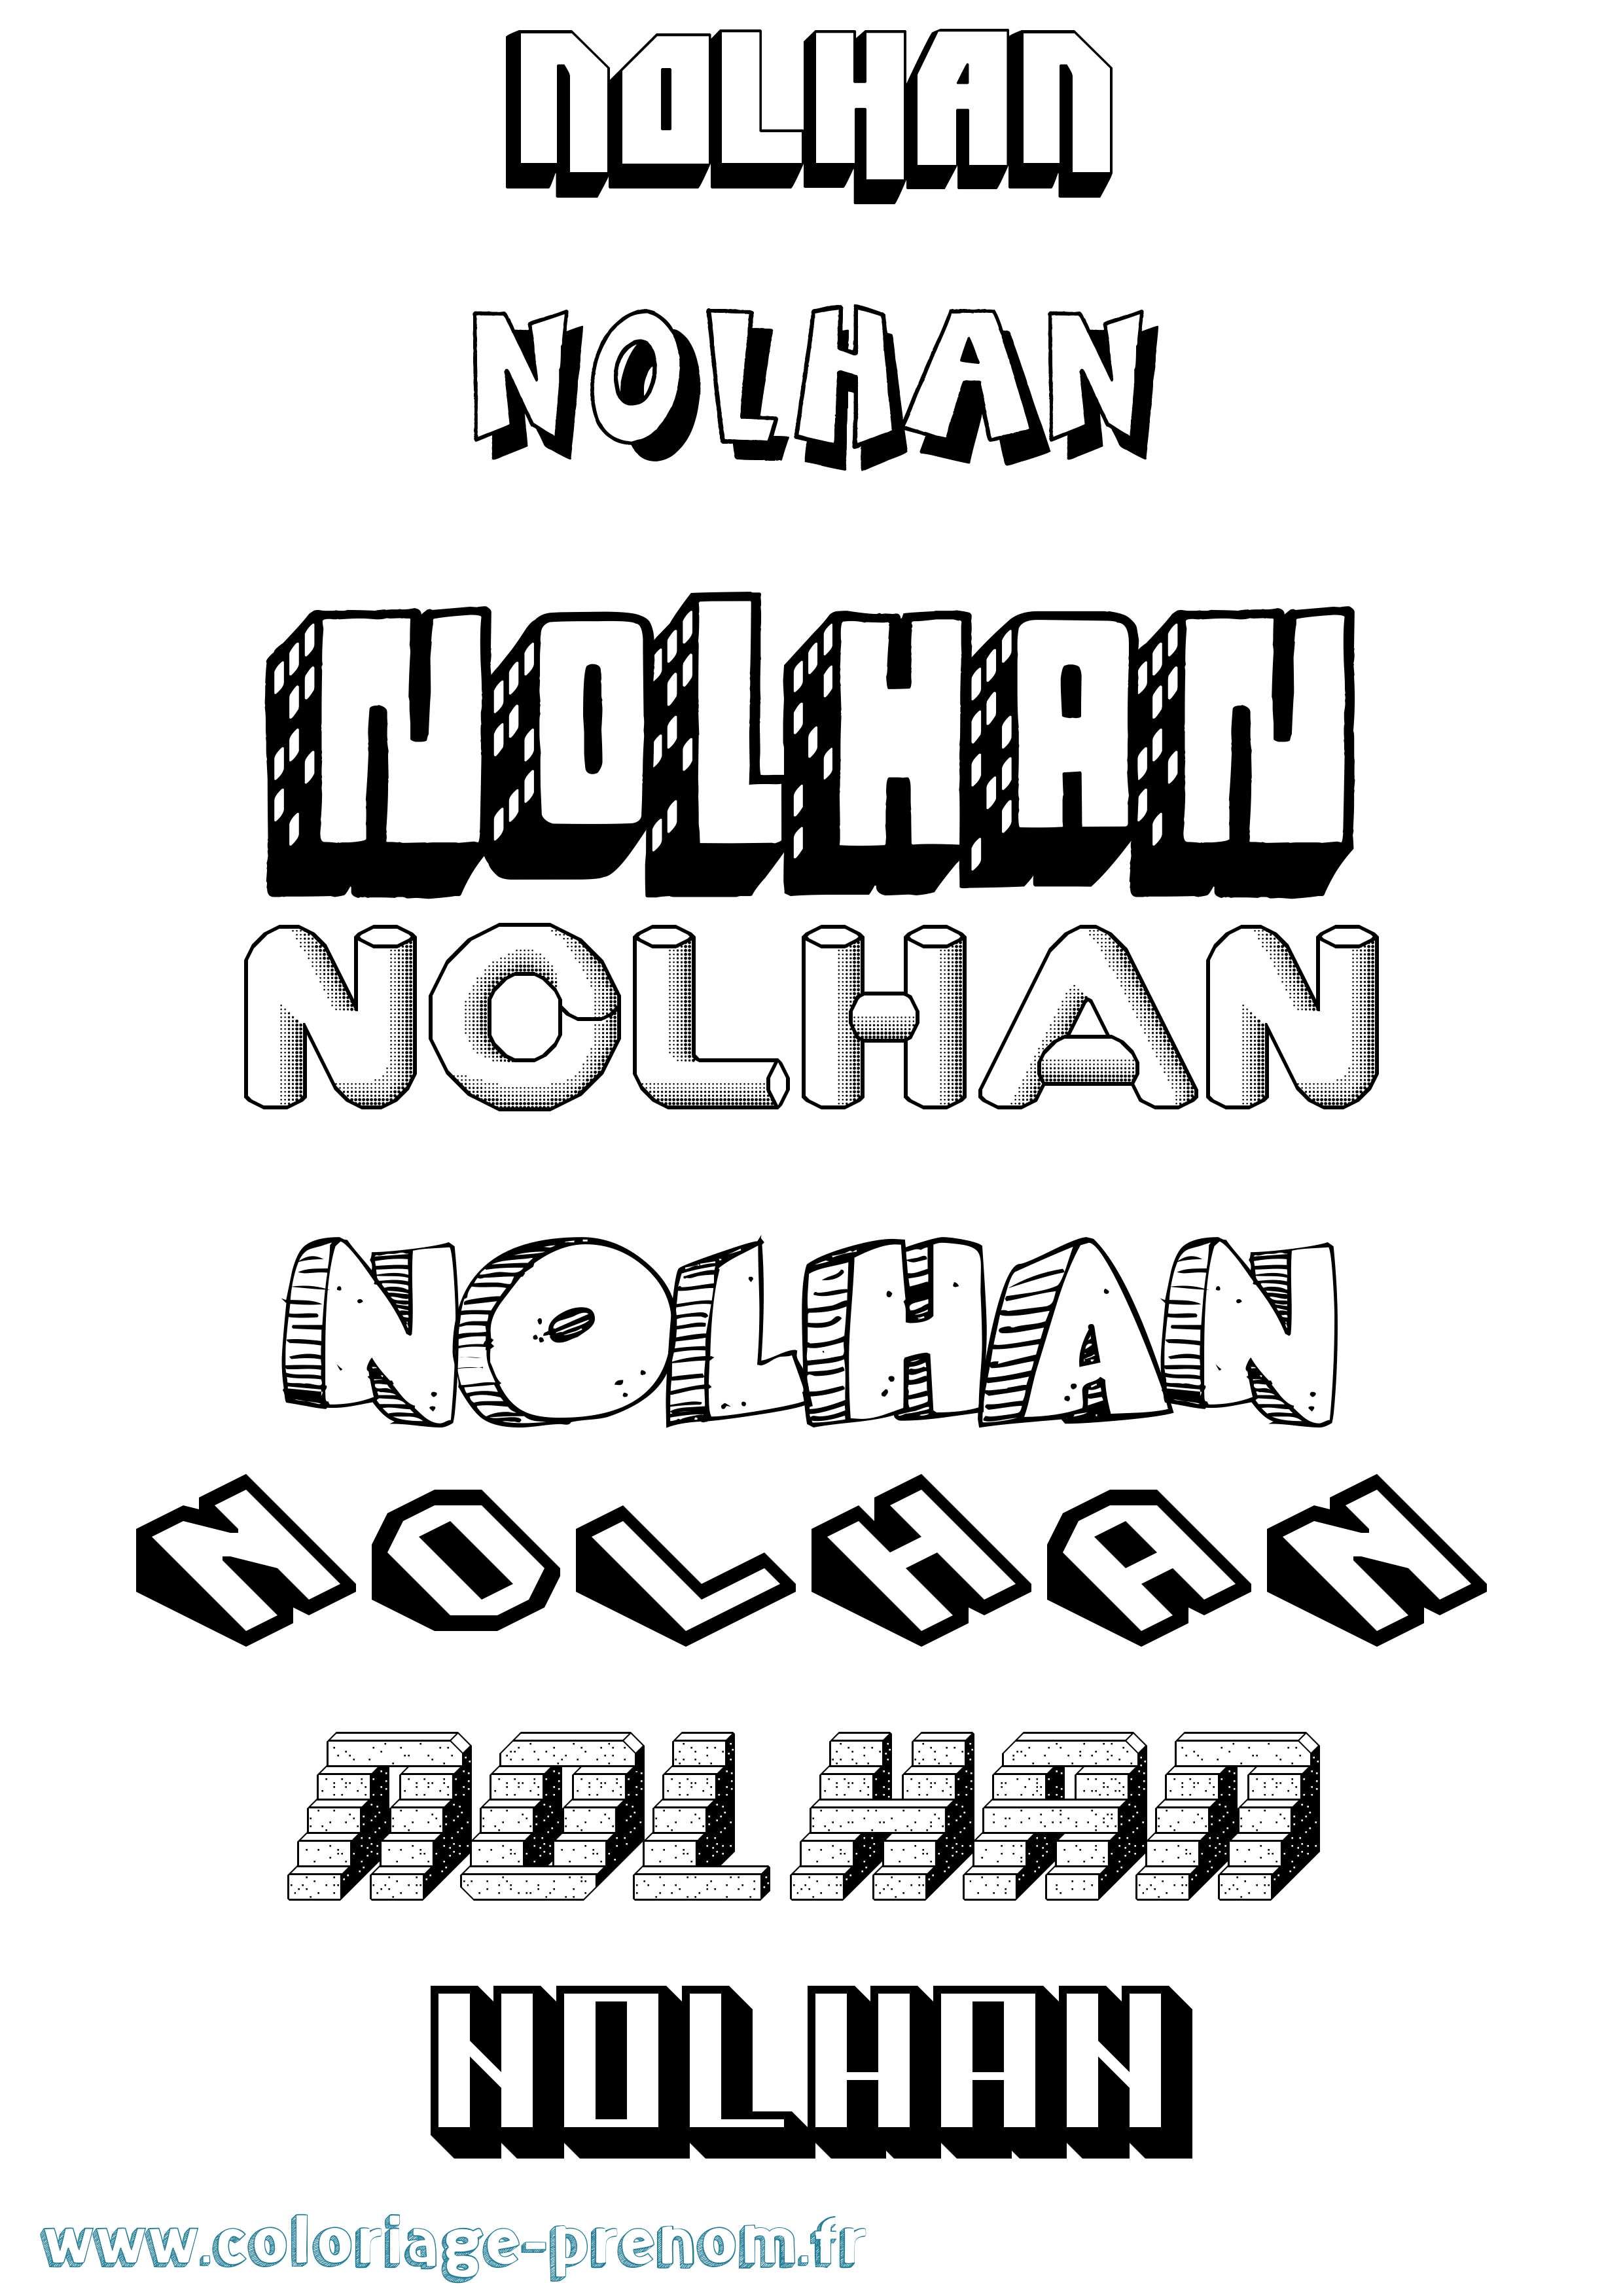 Coloriage prénom Nolhan Effet 3D